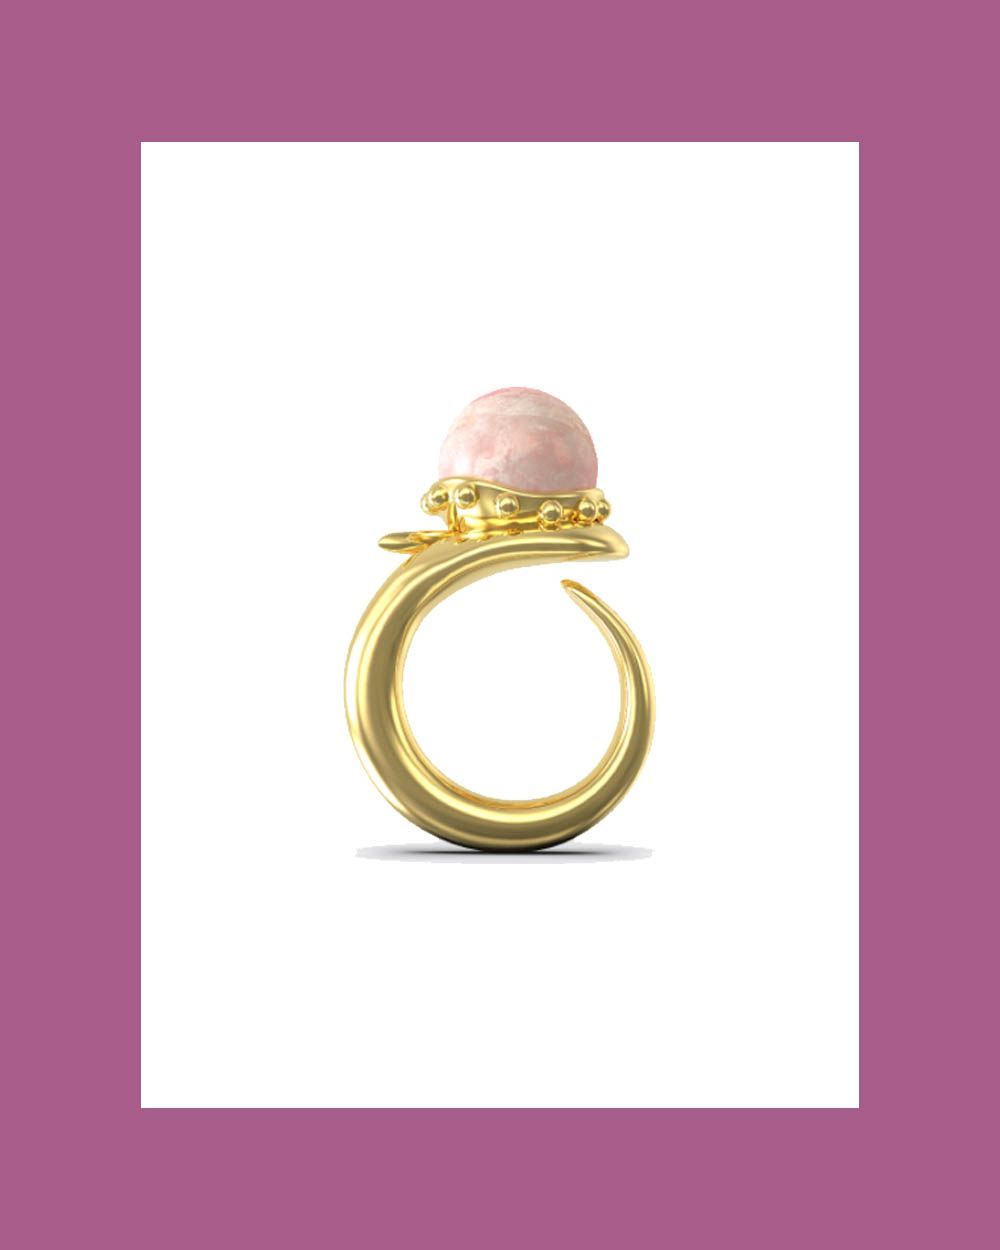 Orb Ring with Rose Quartz